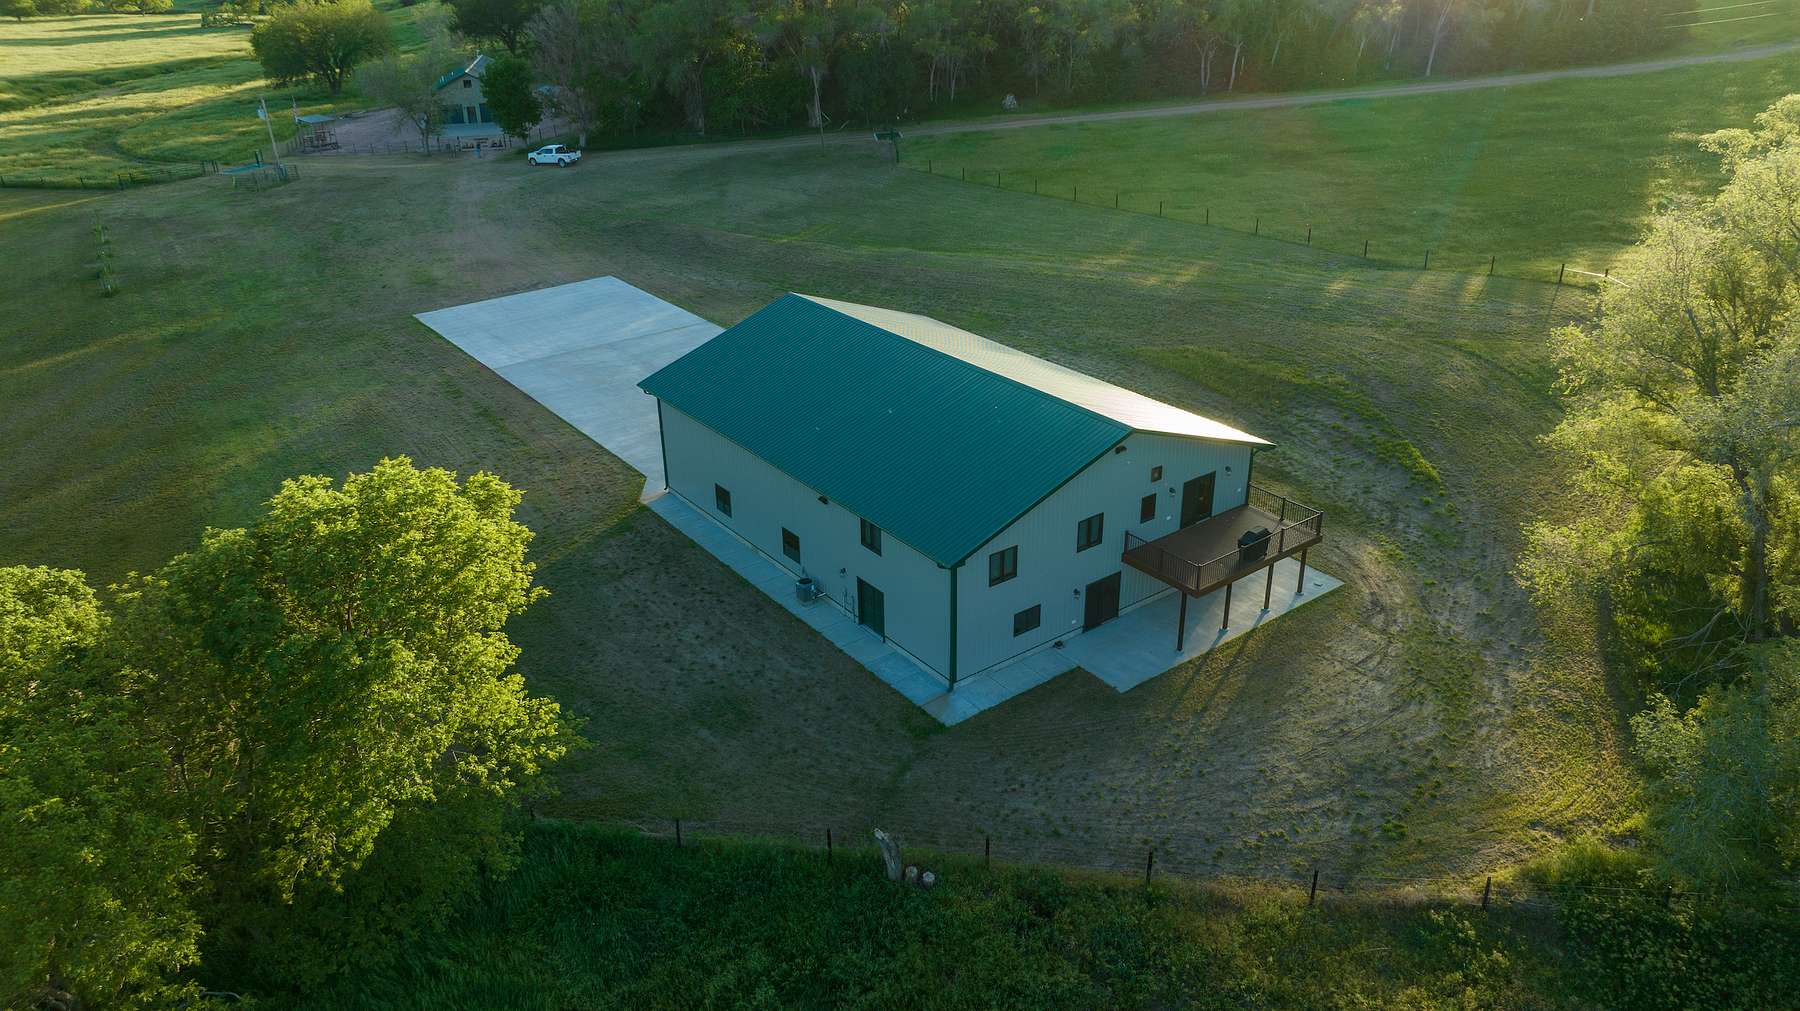 632 Acres of Recreational Land & Farm for Sale in Verdigre, Nebraska